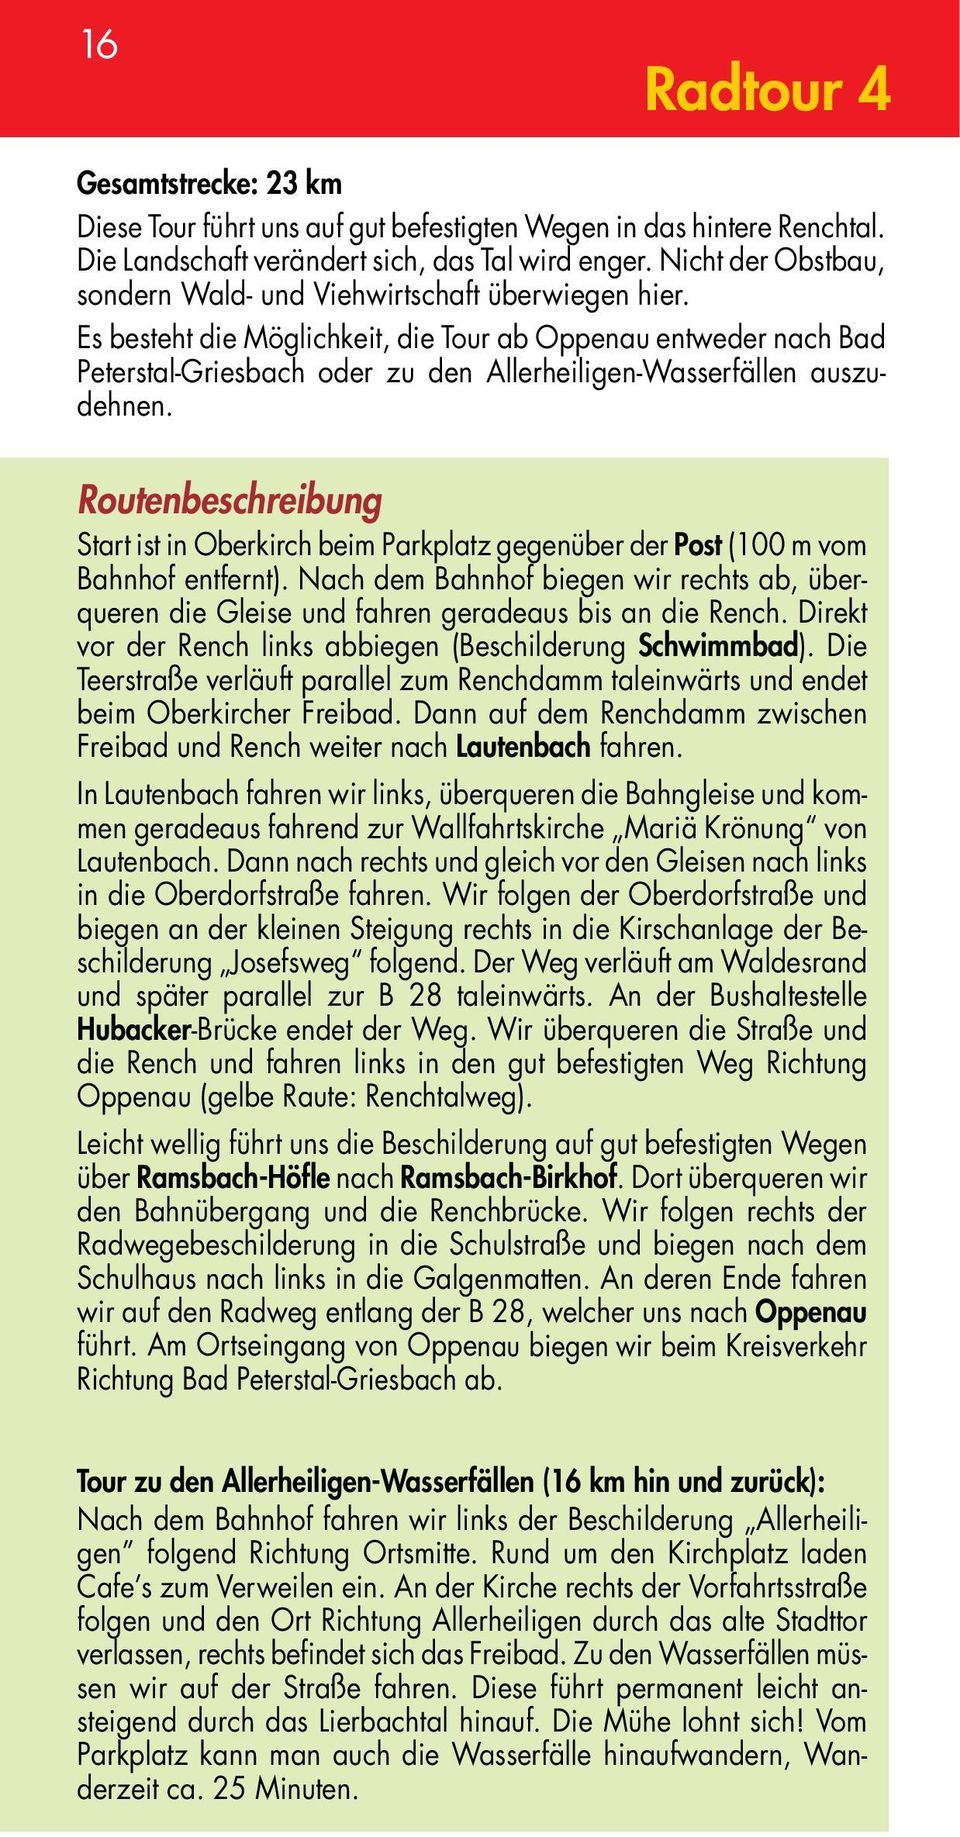 Es besteht die Möglichkeit, die Tour ab Oppenau entweder nach Bad Peterstal-Griesbach oder zu den Allerheiligen-Wasserfällen auszudehnen.